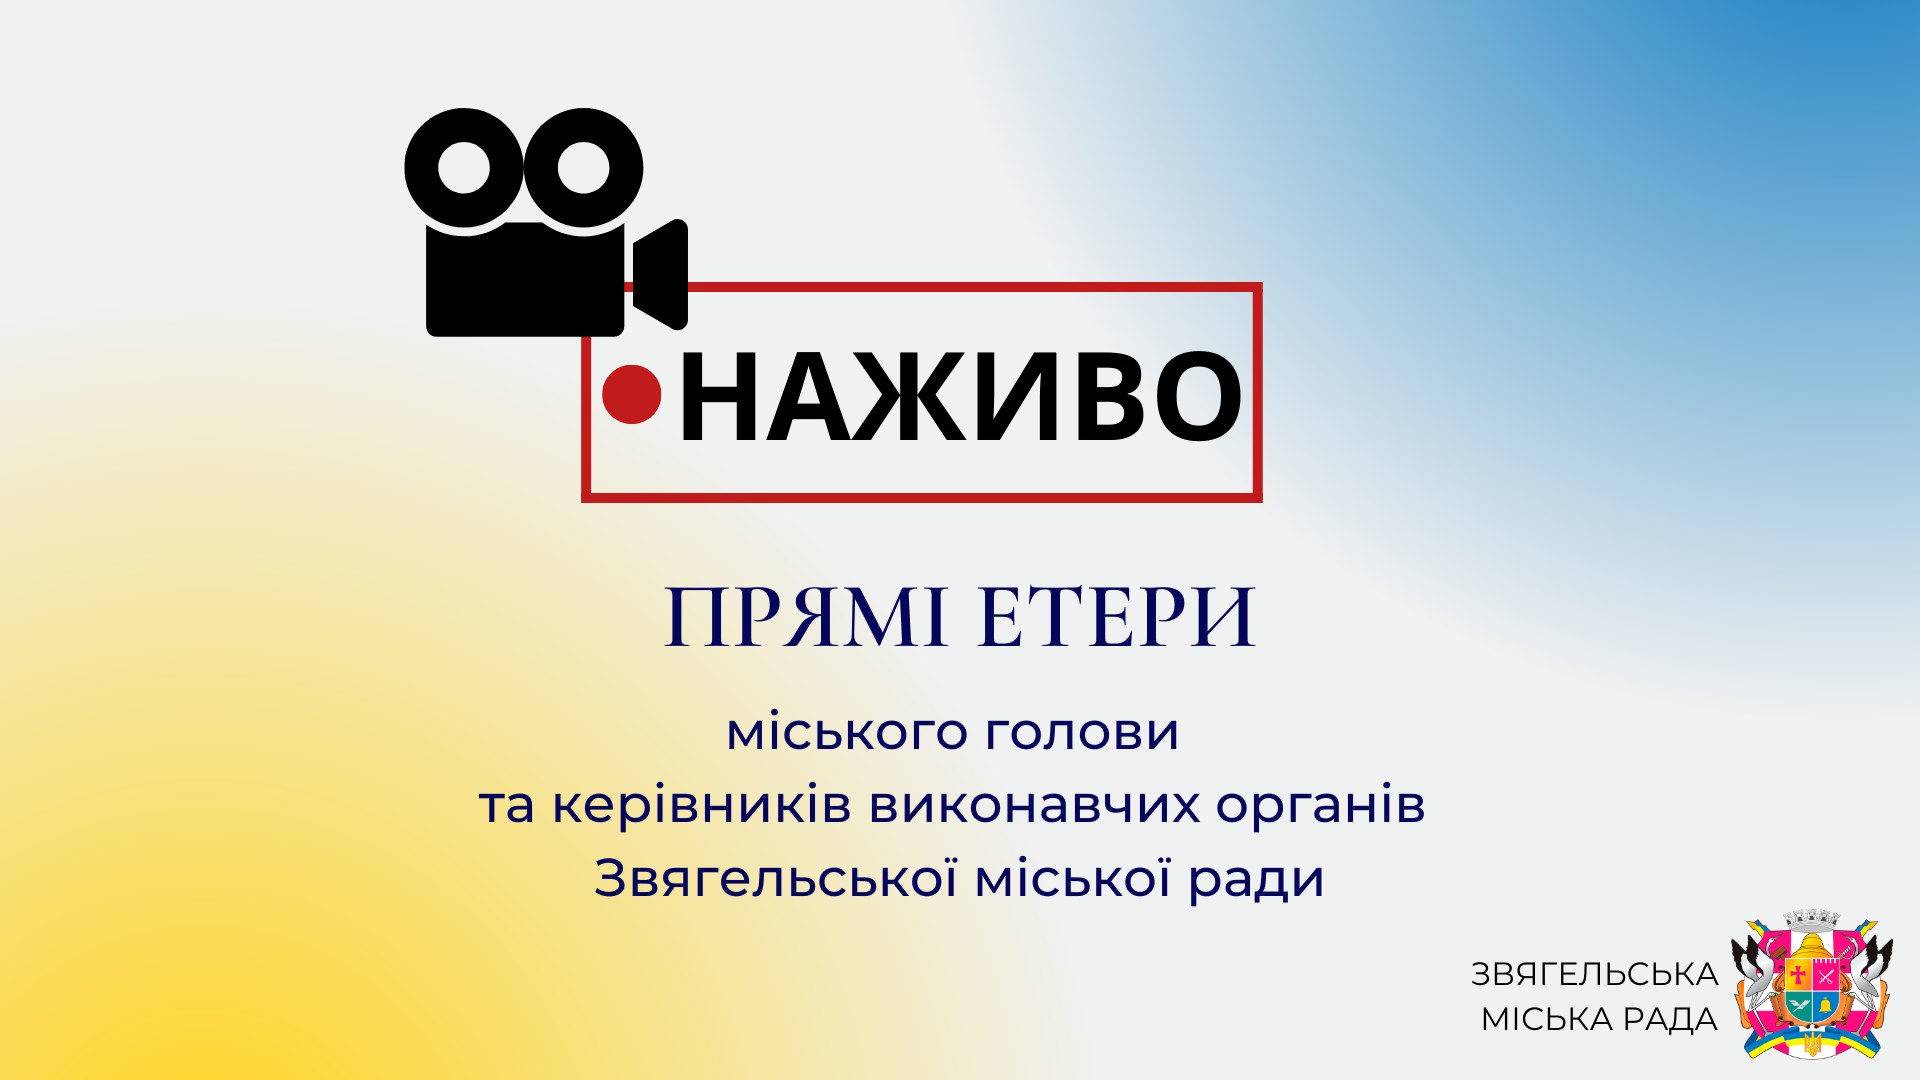 12 грудня о 18:00 відбудеться прямий етер з міським головою Миколою Боровцем